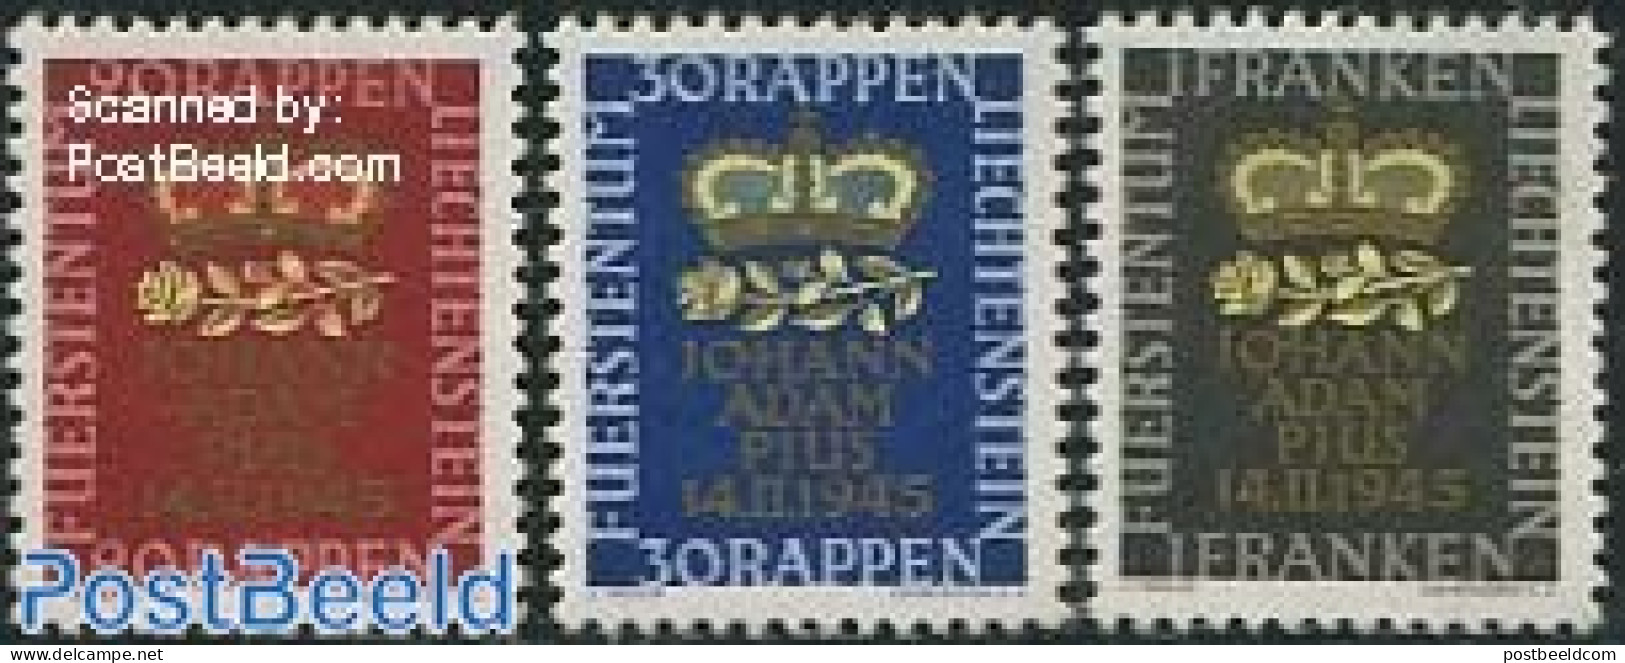 Liechtenstein 1945 Birth Of Johann Adam 3v, Mint NH, History - Kings & Queens (Royalty) - Neufs